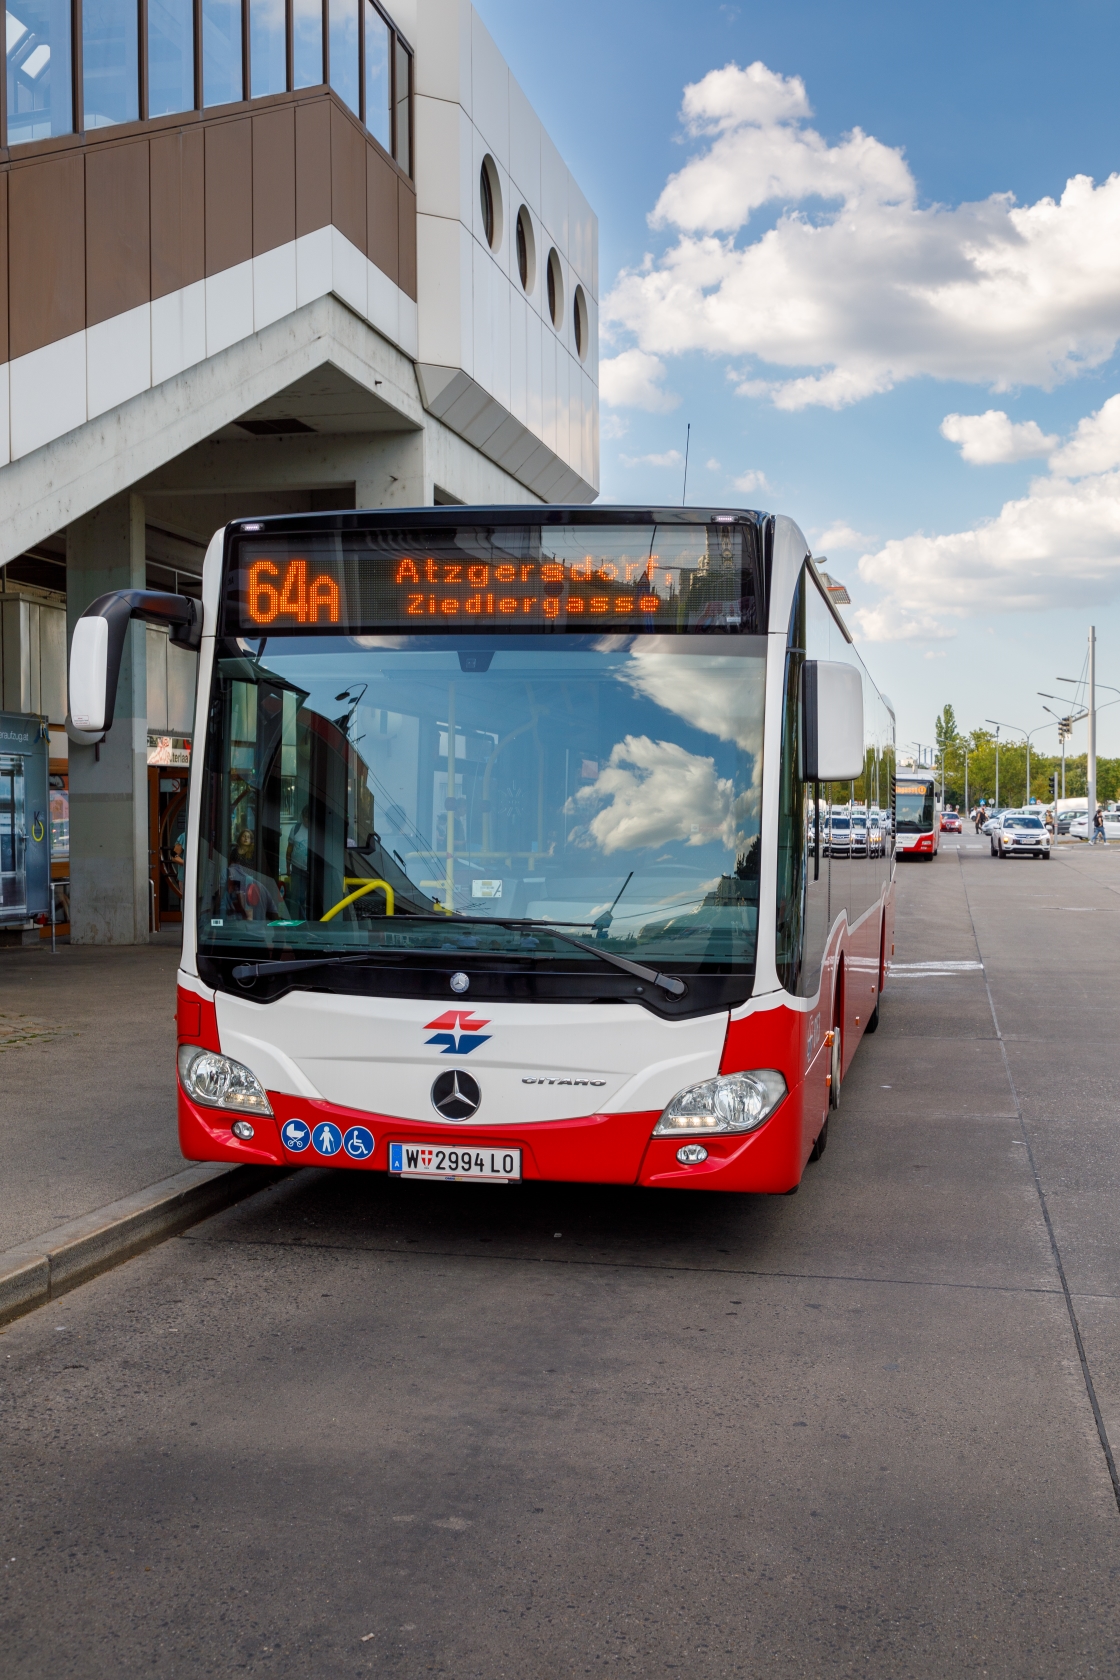 Die Wiener Linien erweitern ihr Busnetz in Liesing, um die Fahrgäste noch besser an U-, S- und Badner Bahn anzuschließen. Dafür werden zwei Buslinien neu geschaffen - 61B und 64B - und zwei bestehende Linien neu organisiert - 61A und 64A.